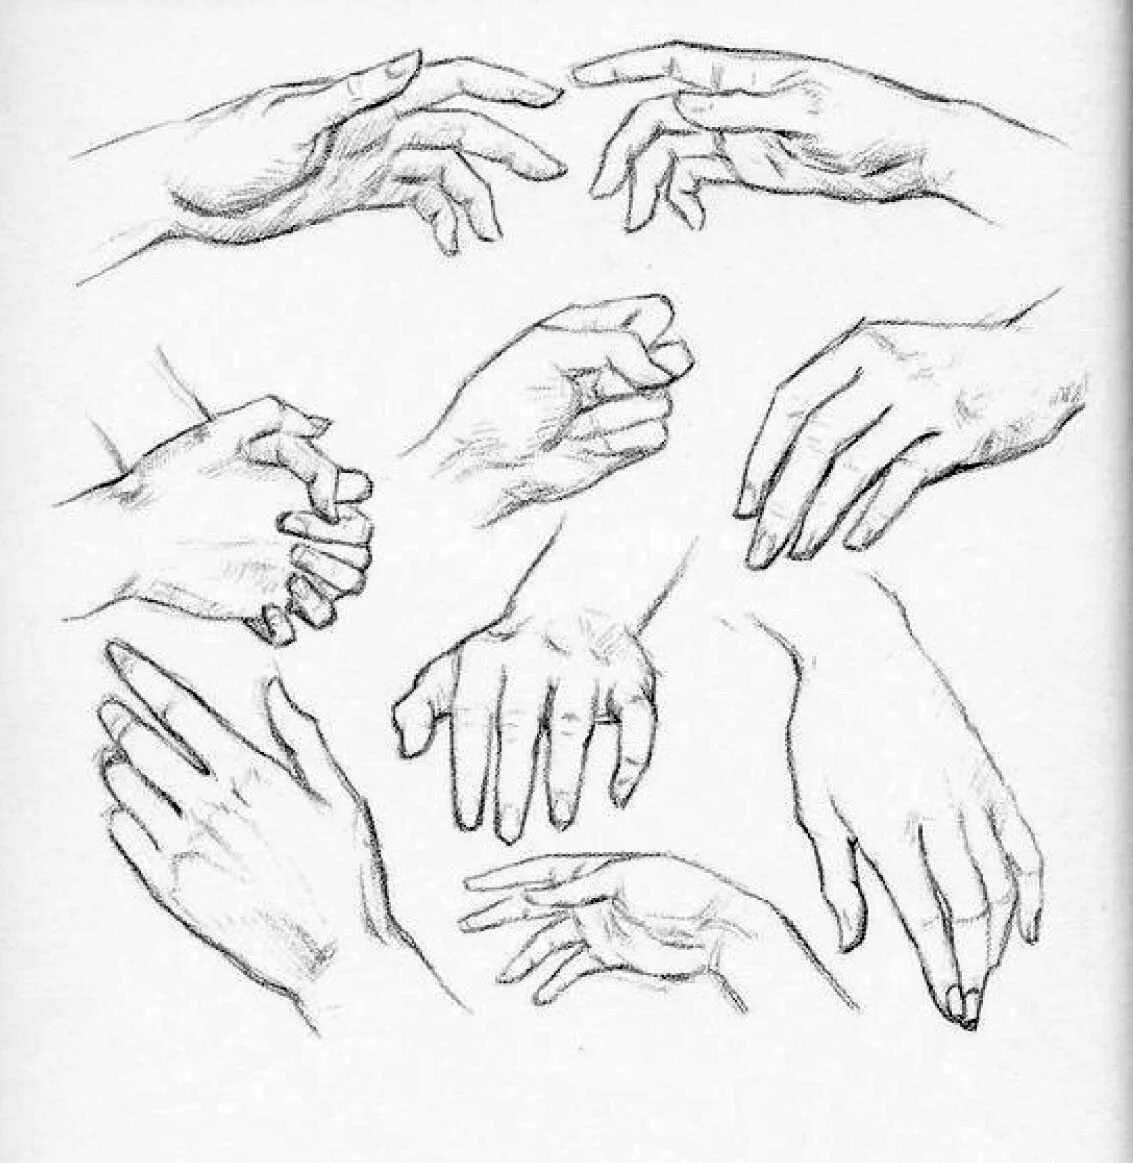 Руки в кис. Зарисовки рук карандашом. Наброски кистей рук. Рисование рук в разных положениях. Кисти рук скетч.